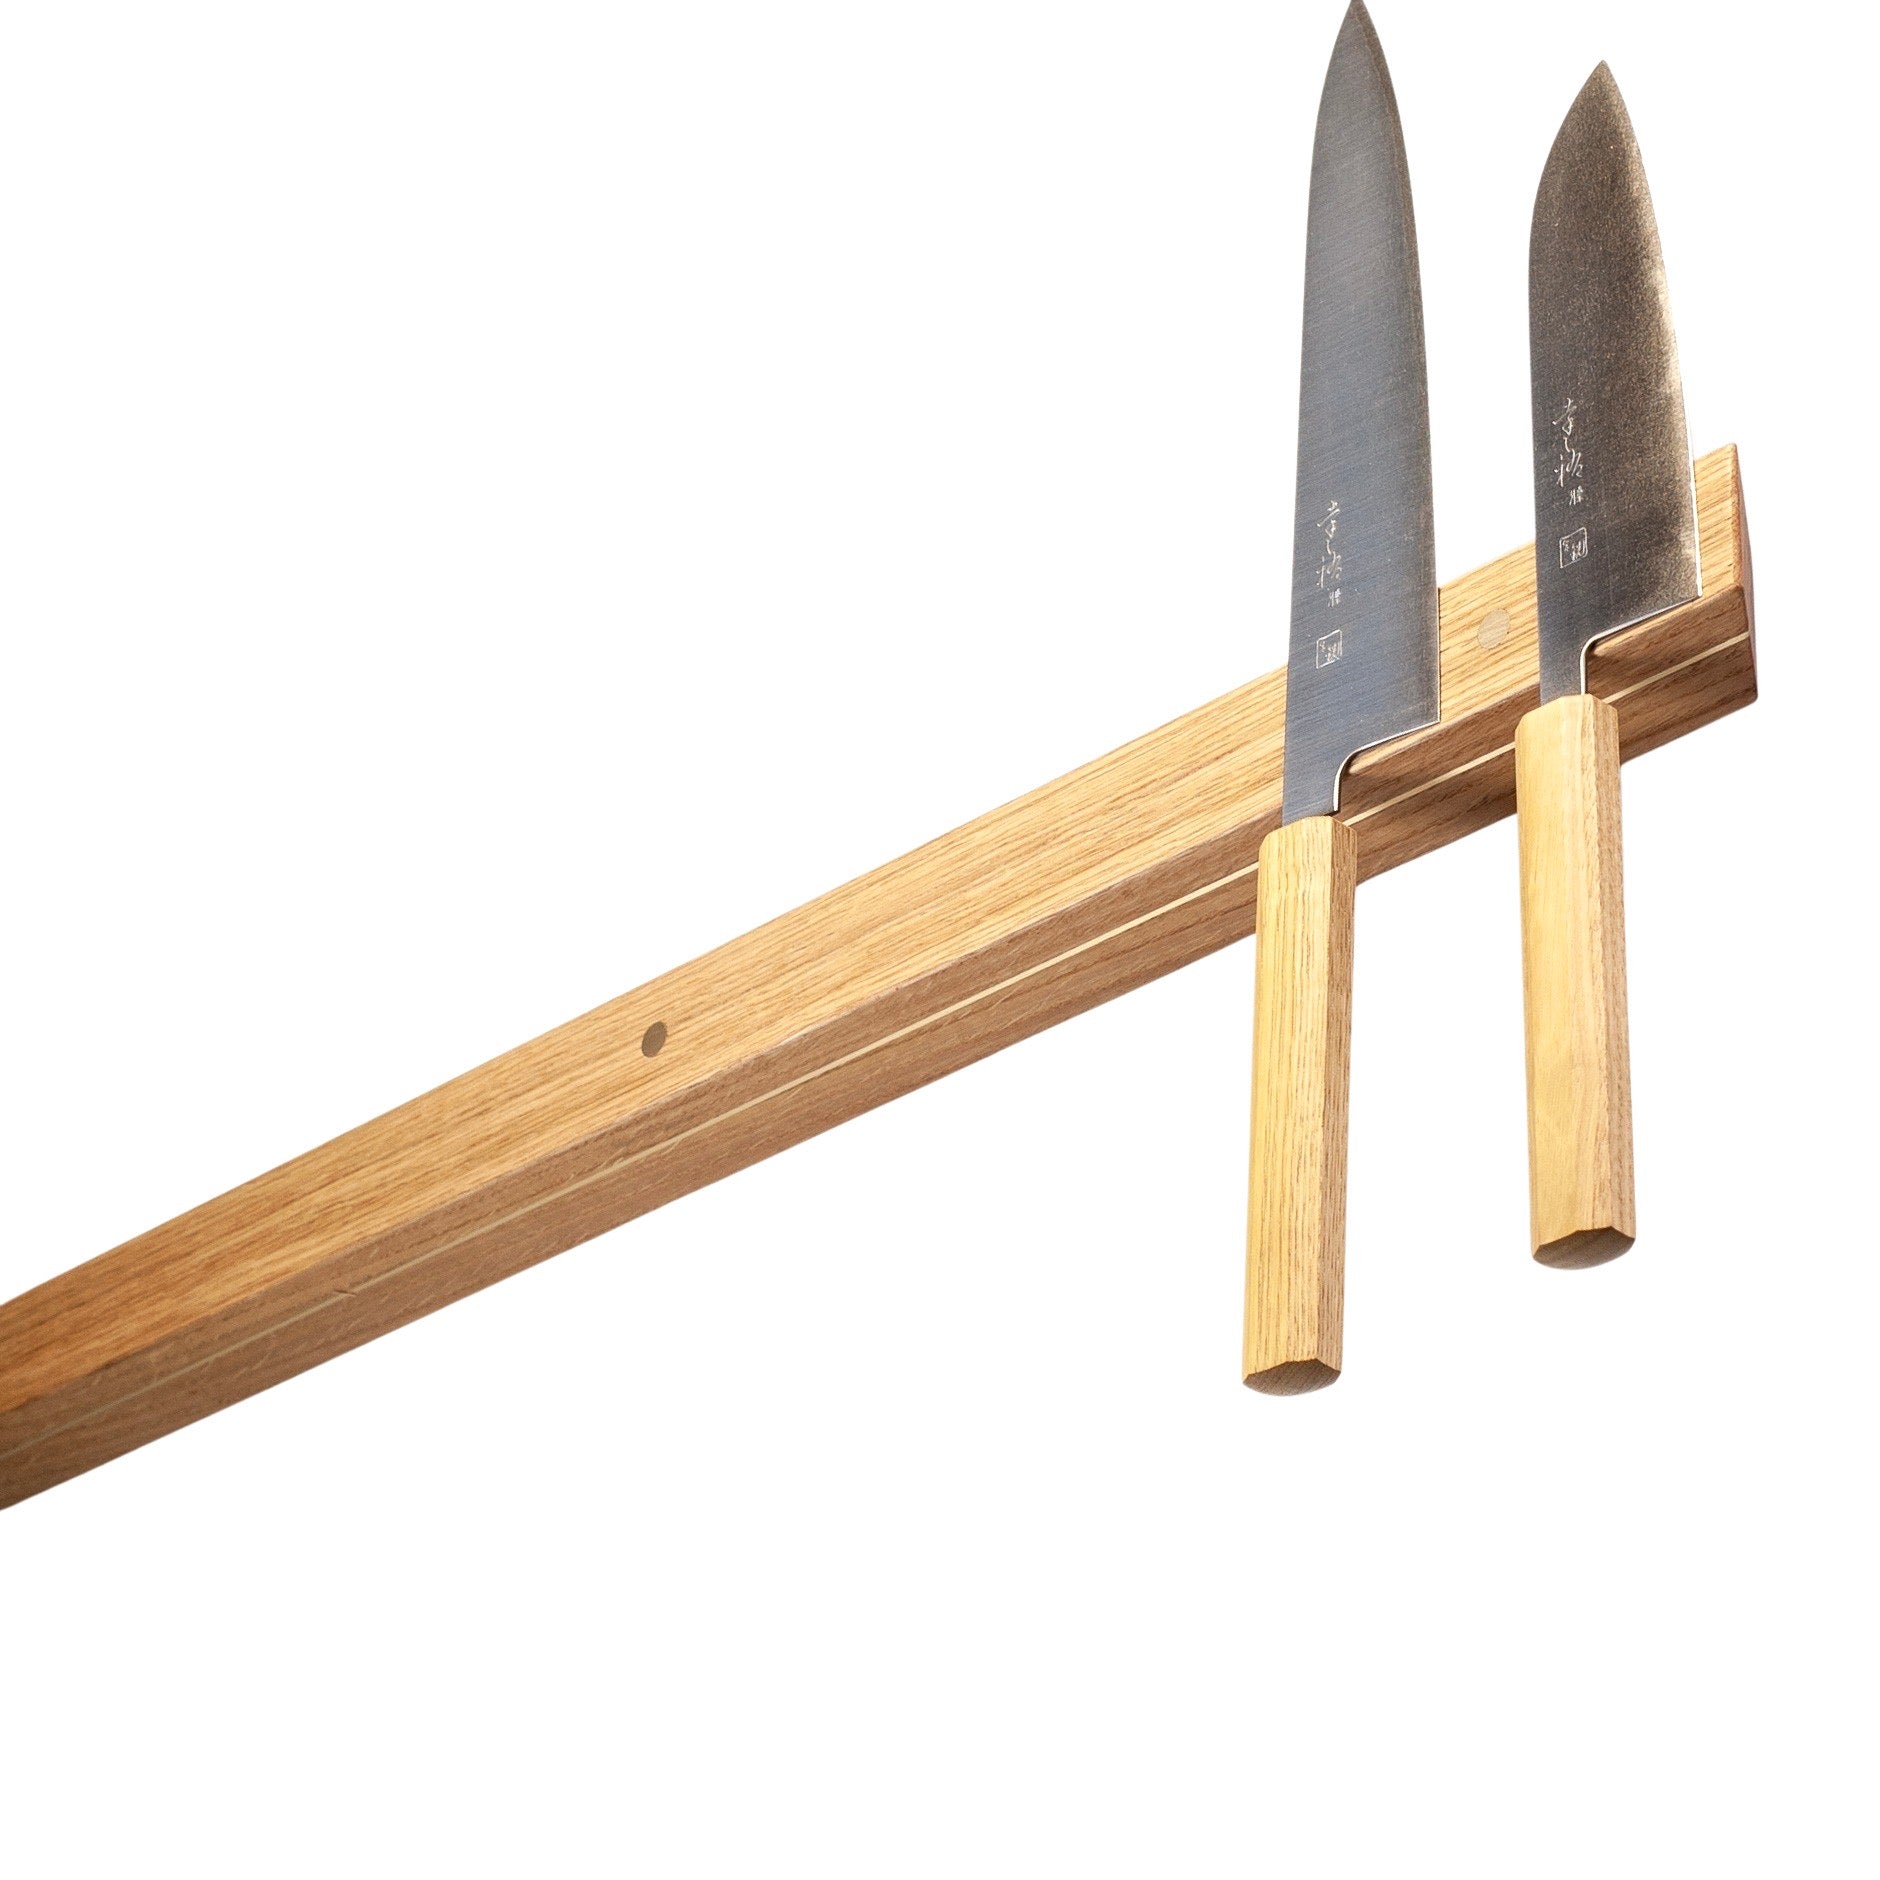 Rune-Jakobsen Woodworks 'Knifeboard Classic' dyb knivmagnet_4 by Rune-Jakobsen Design